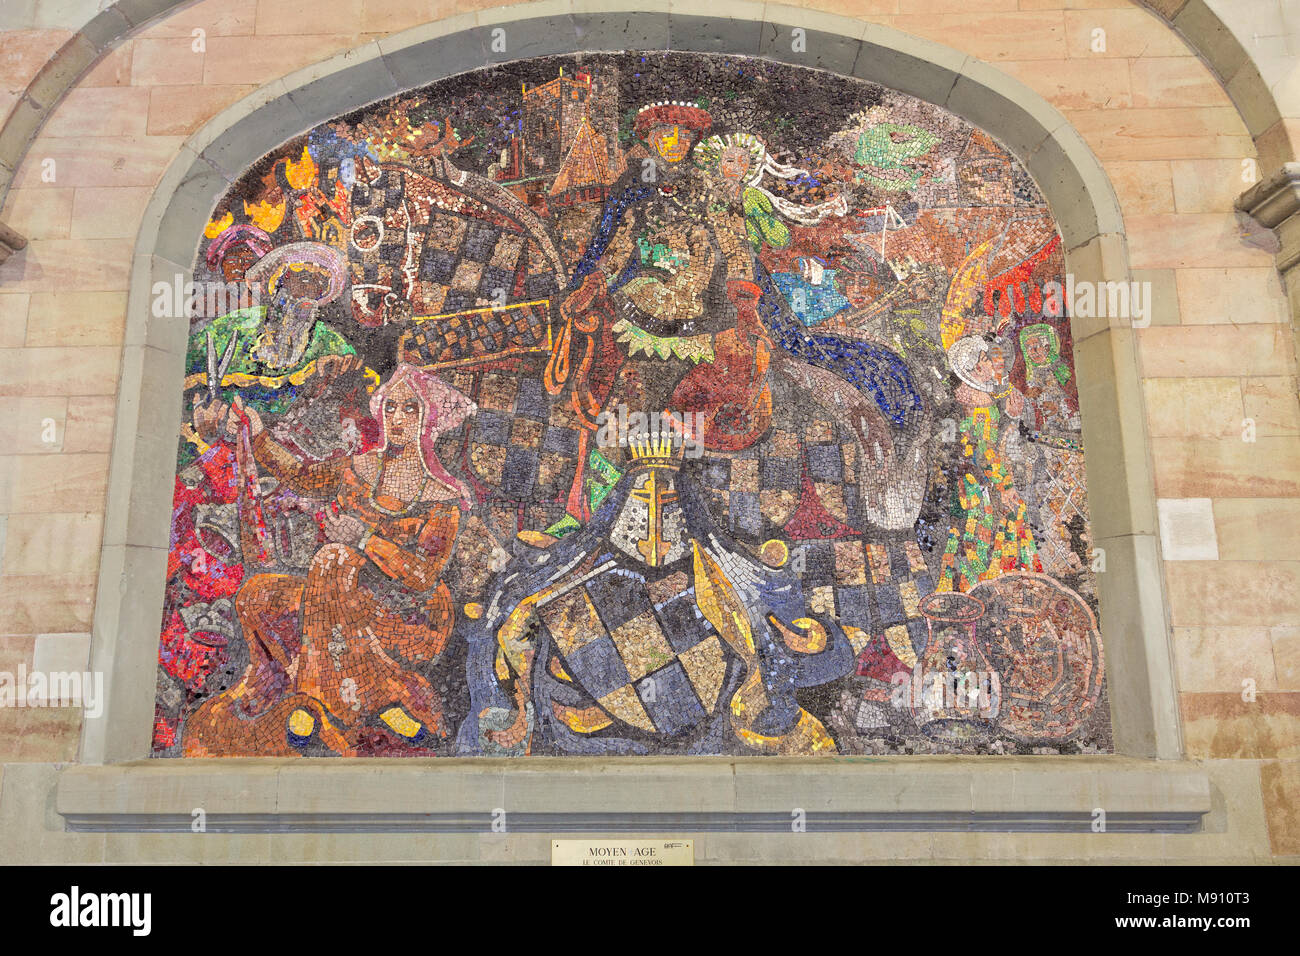 Die Grafen von Genf und der Stadt fair - Mittelalter - Arsenal - eine Reihe von Mosaik Szenen, die jeweils mit einem anderen Moment in der Geschichte von Genf Stockfoto